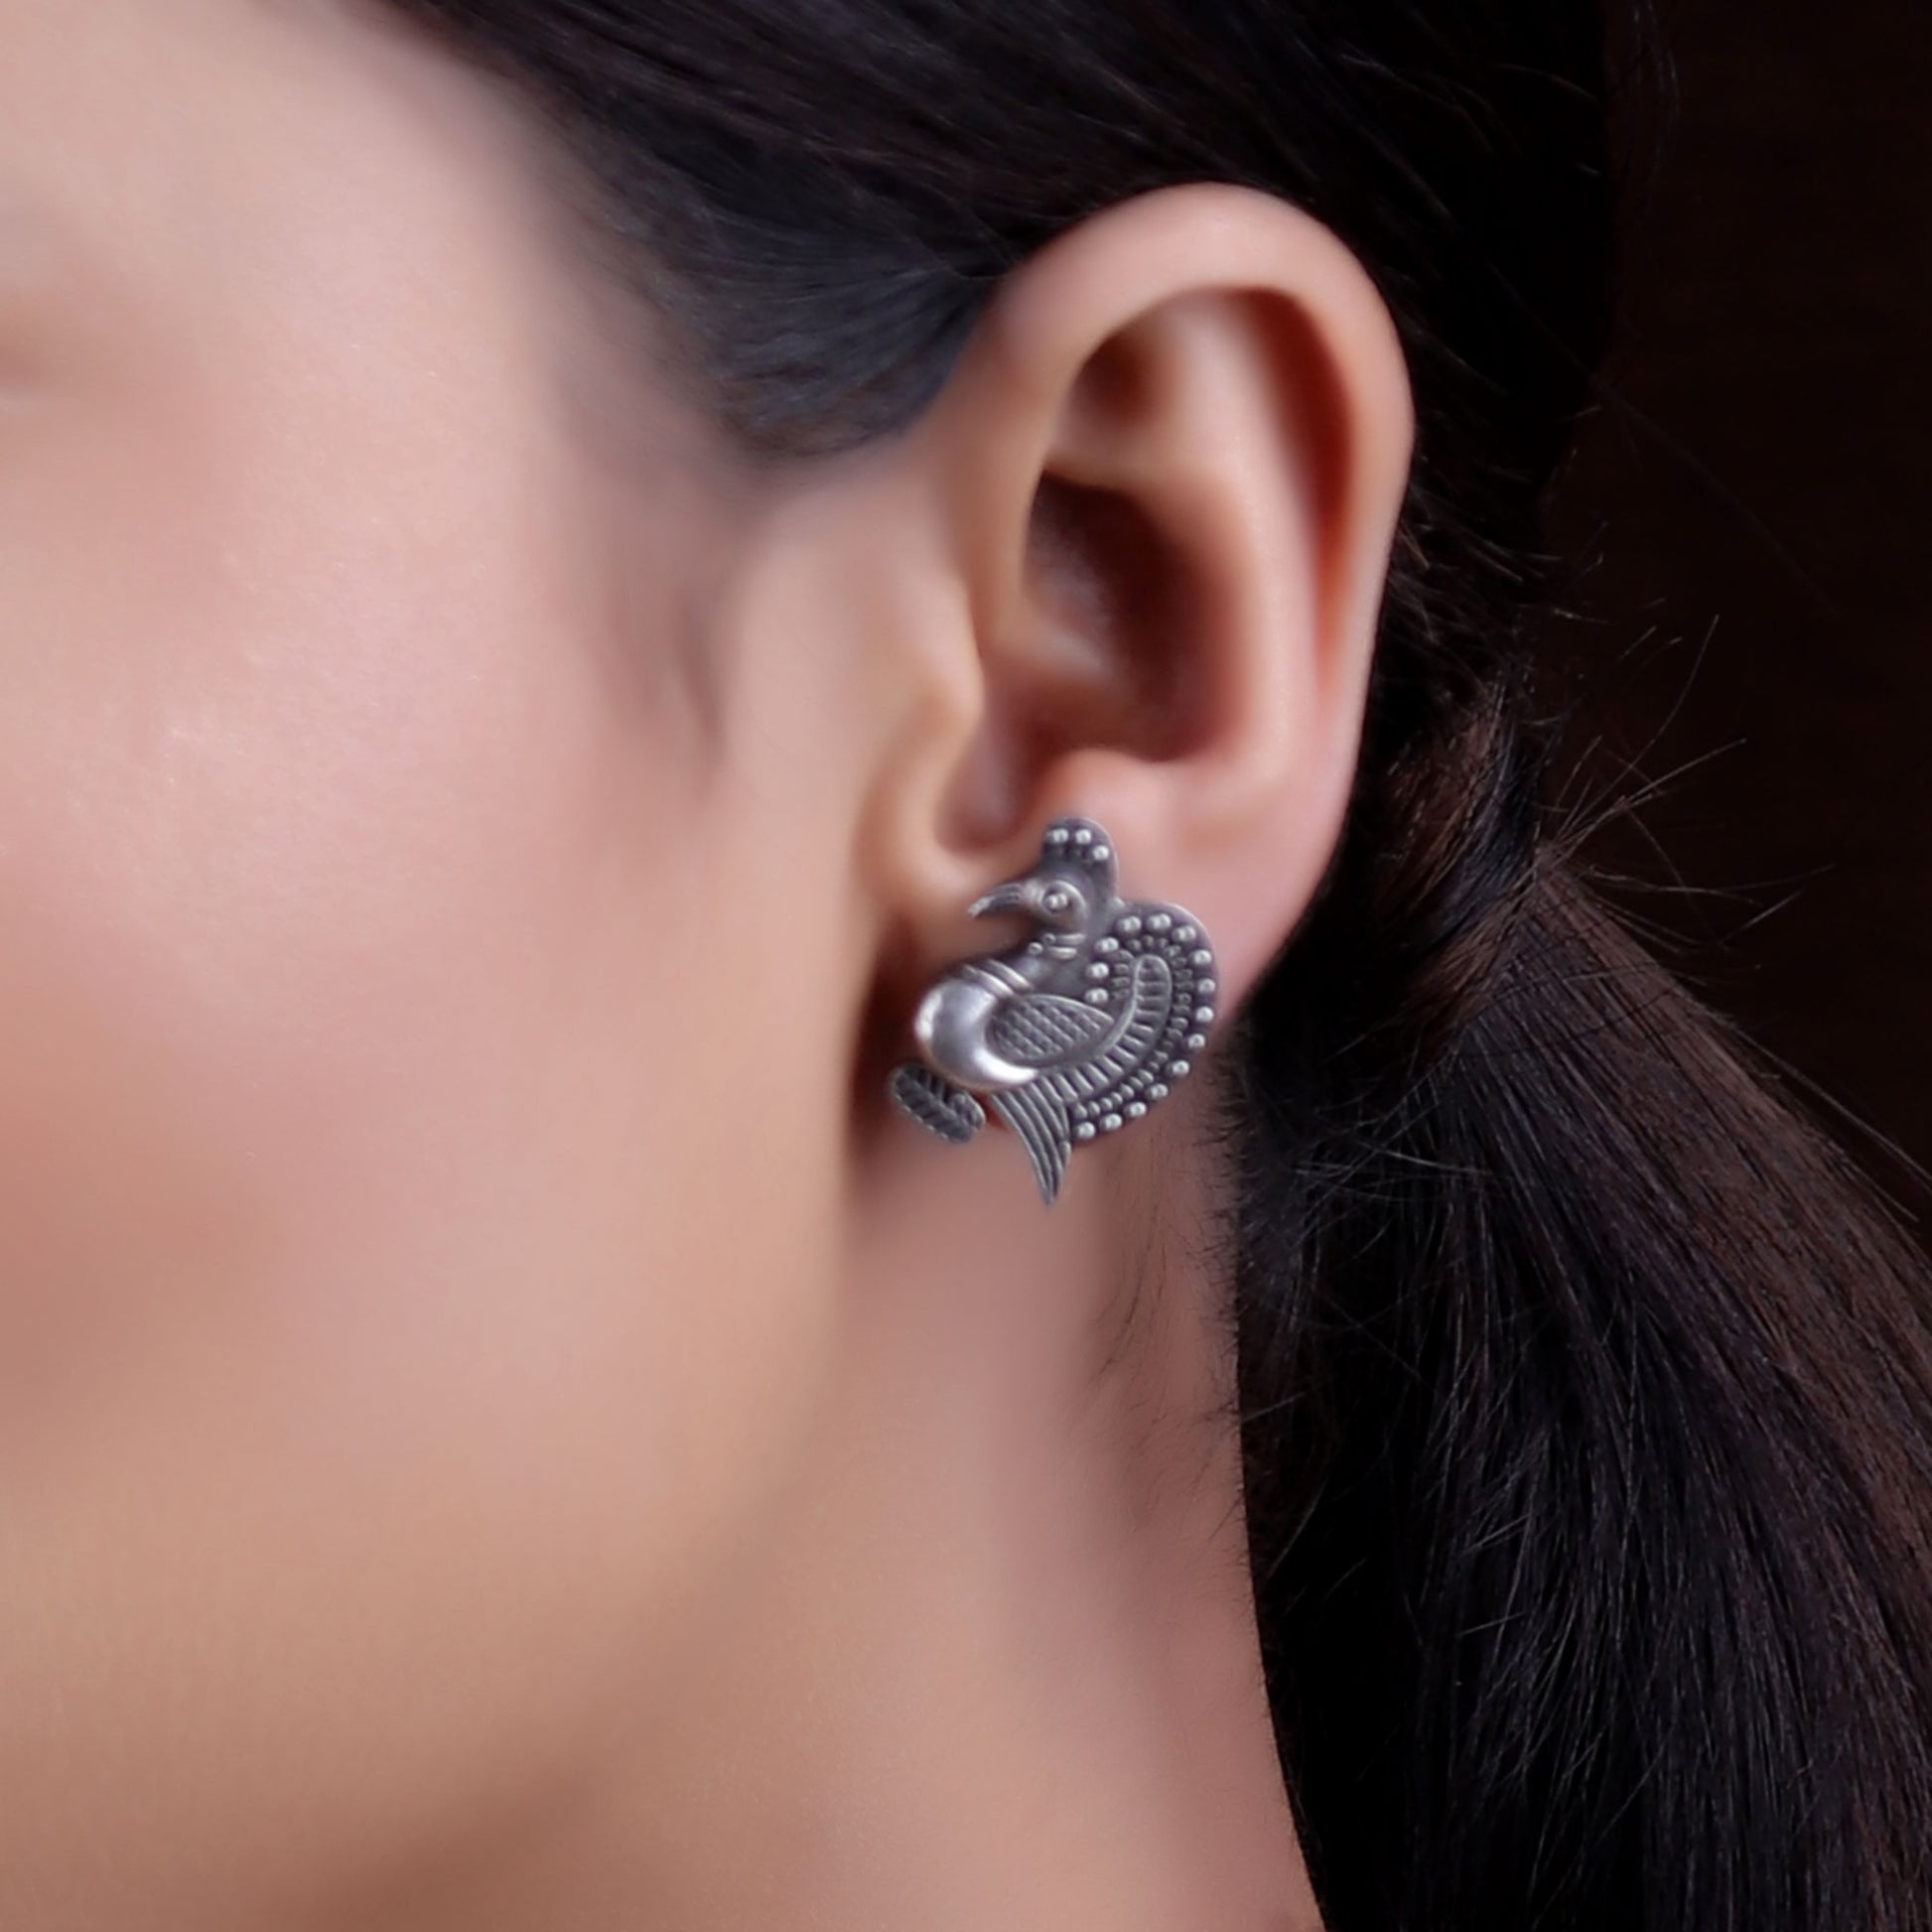 Earrings,The Endearing Crown Peacock Silver Look Alike Stud - Cippele Multi Store